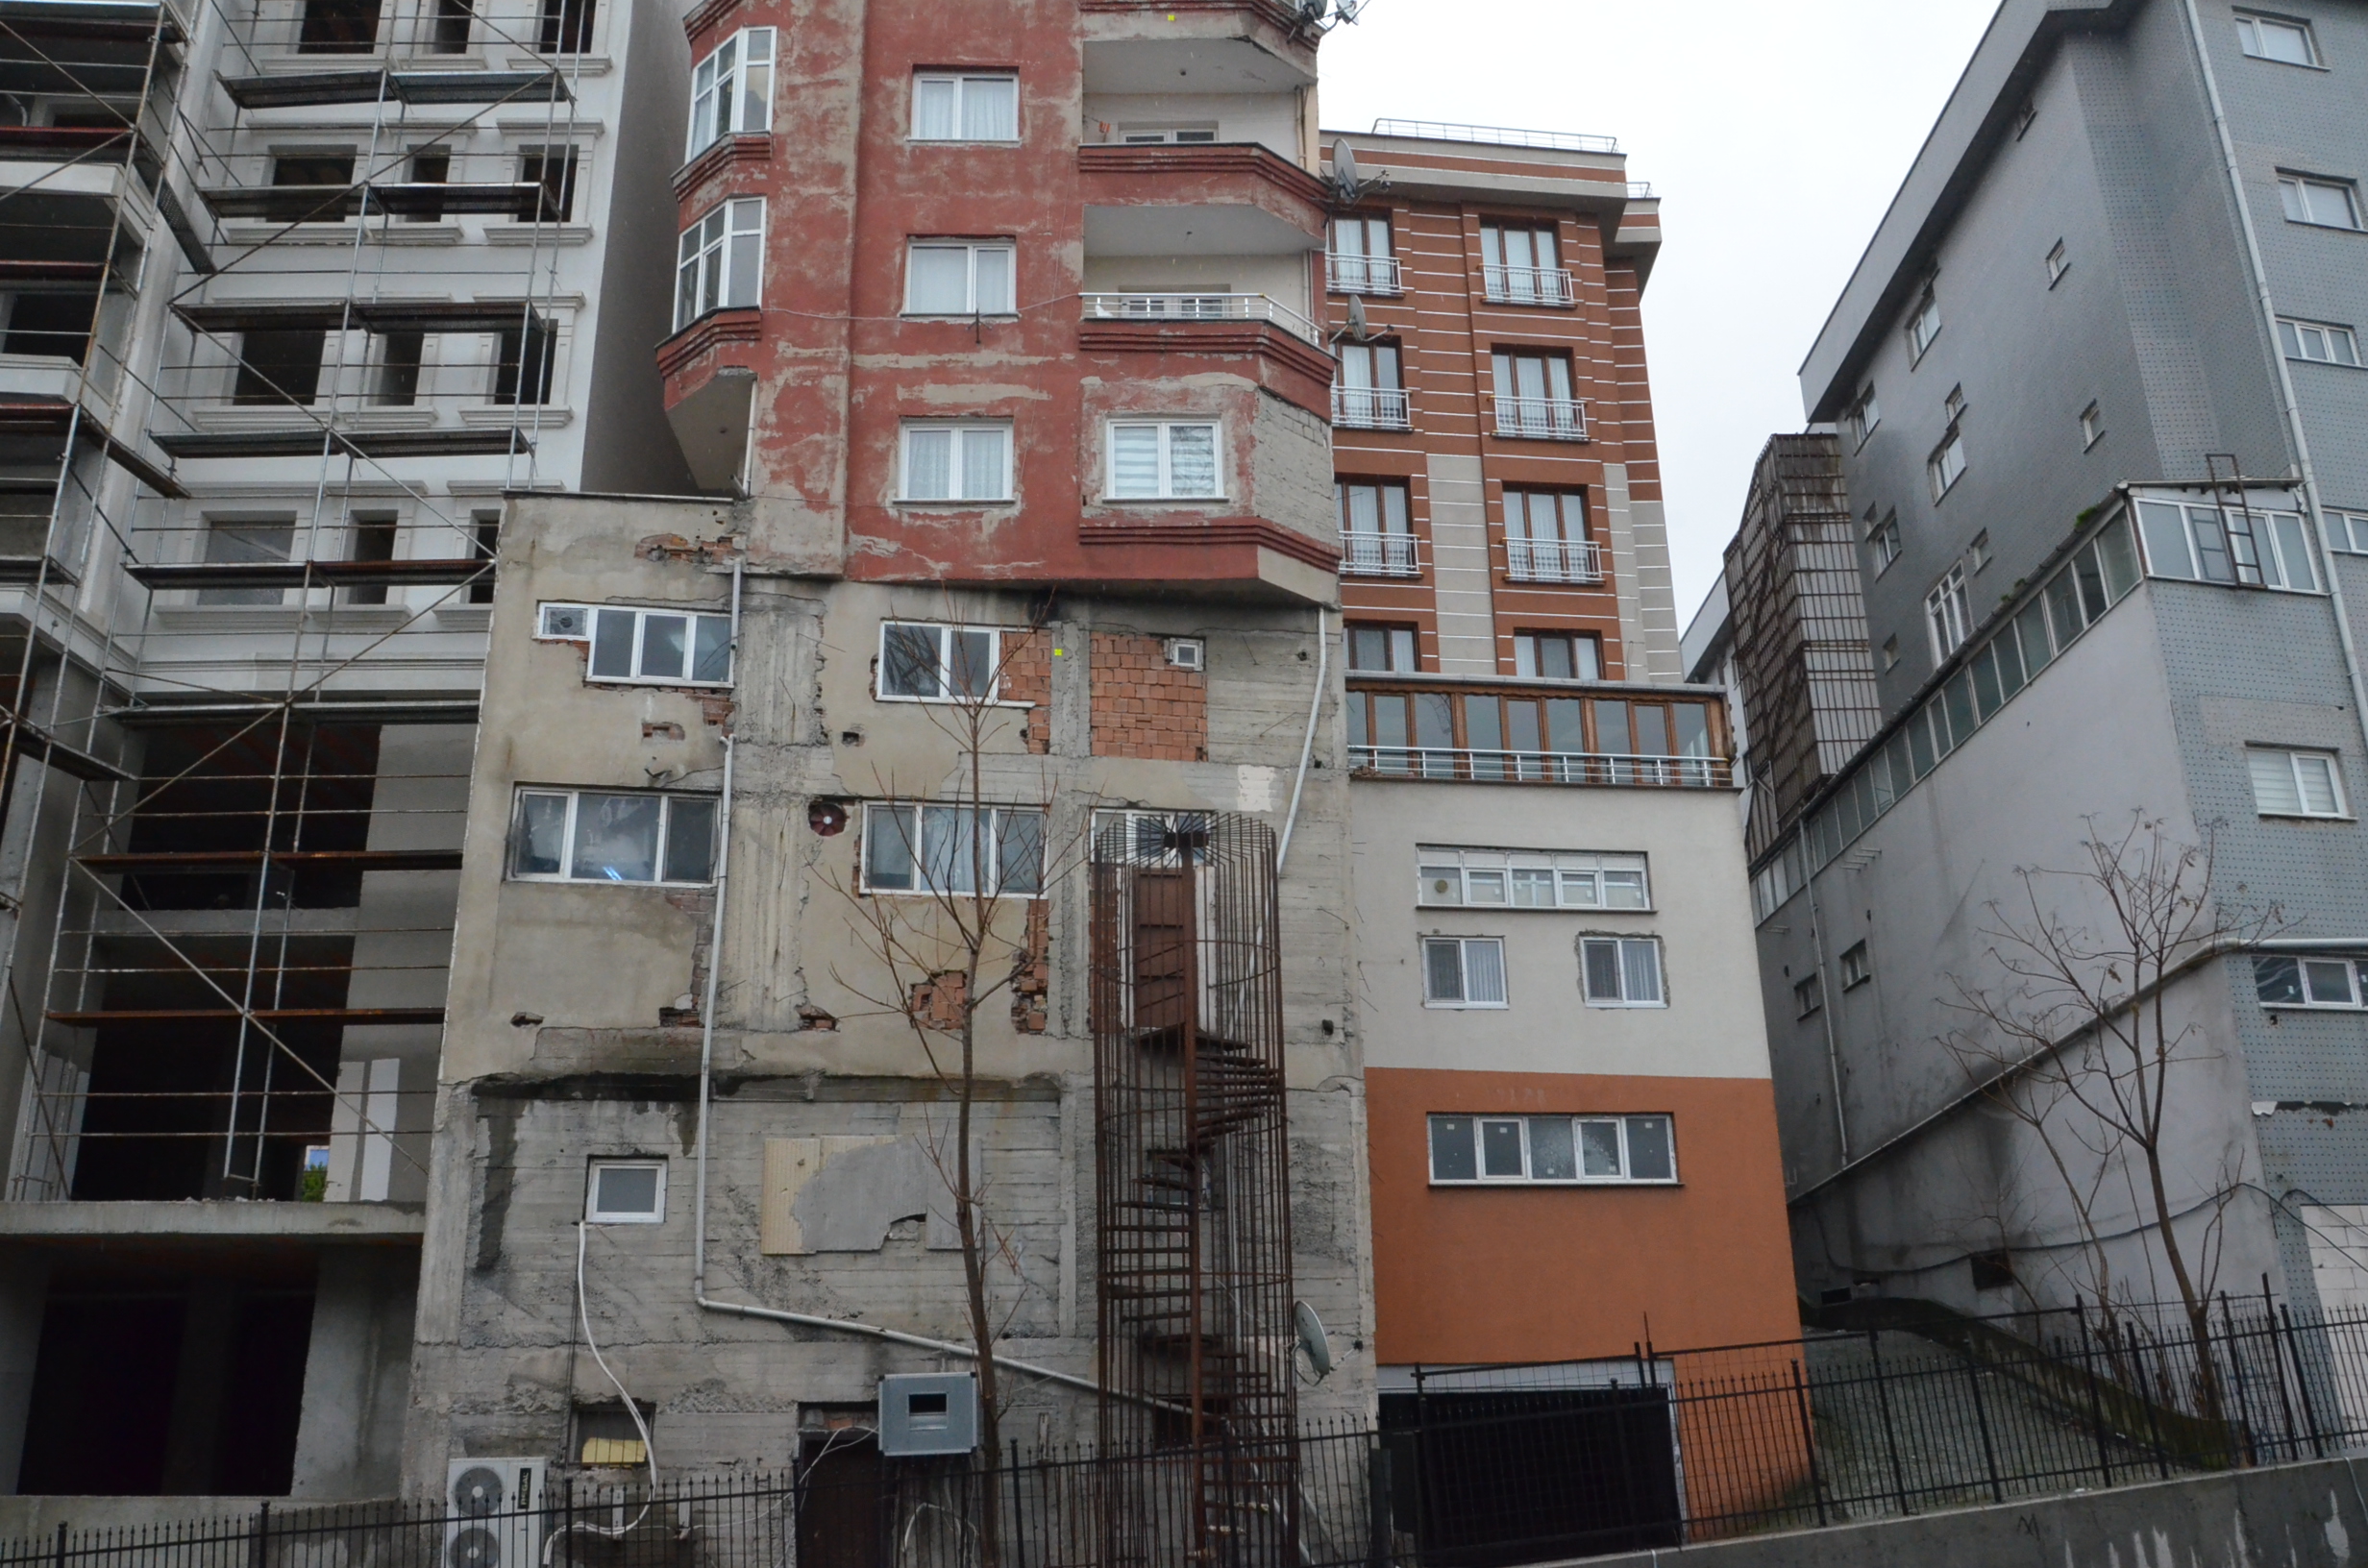 istanbul bagcilar da 9 katli bir binayi gorenleri saskinliklarina donuyor yeni safak